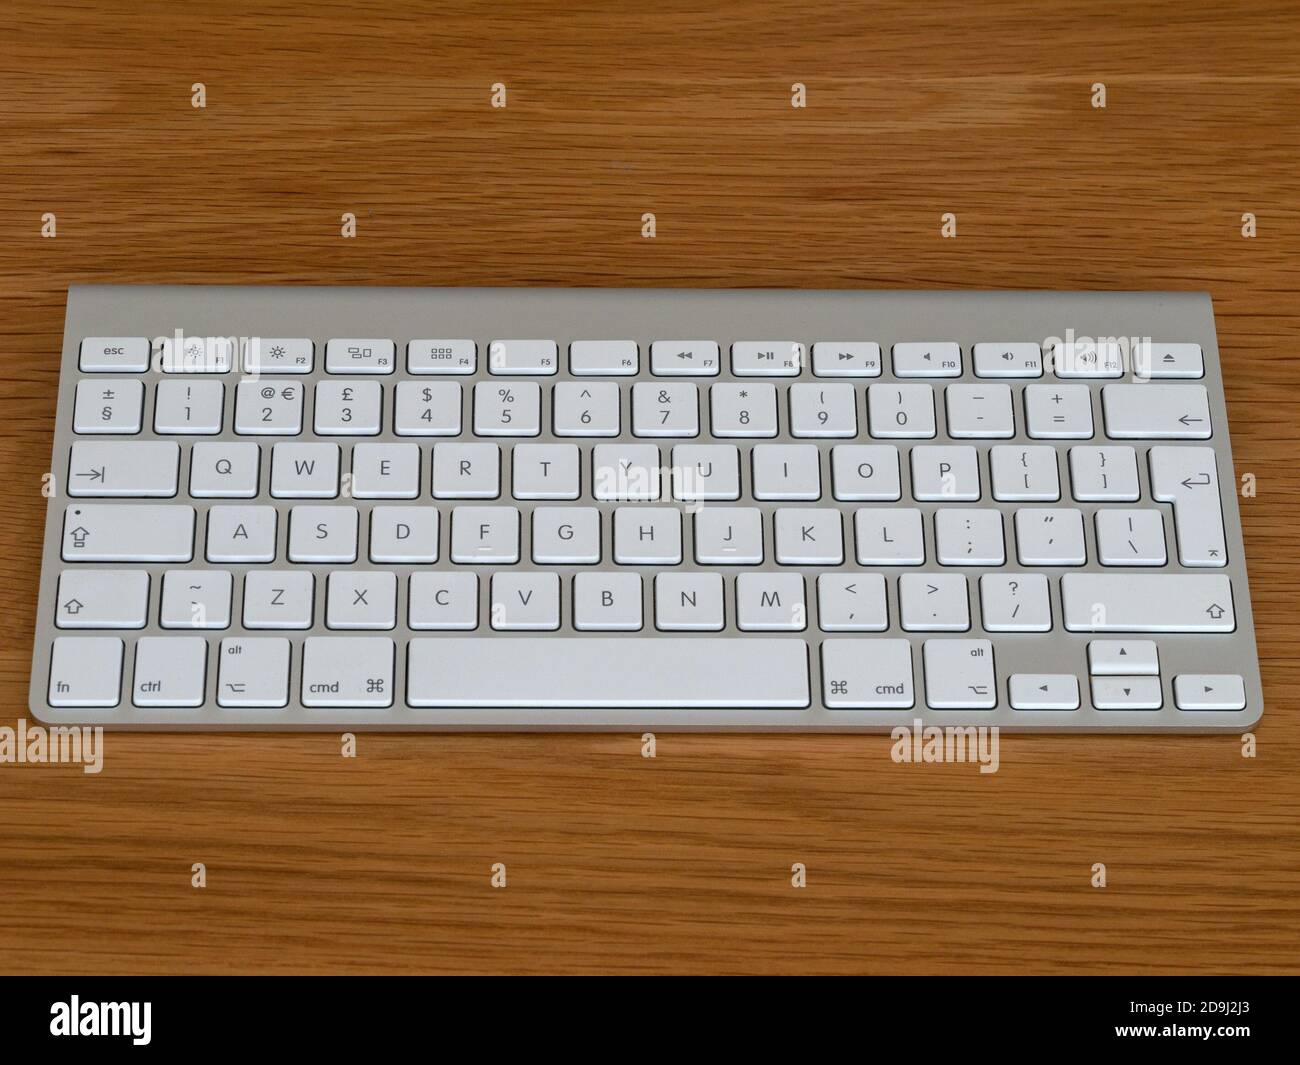 Magic inalámbrico bluetooth ordenador Reino Unido Inglés teclado QWERTY con teclas blancas y plata anodizado cuerpo de metal sobre fondo de madera Fotografía de stock - Alamy